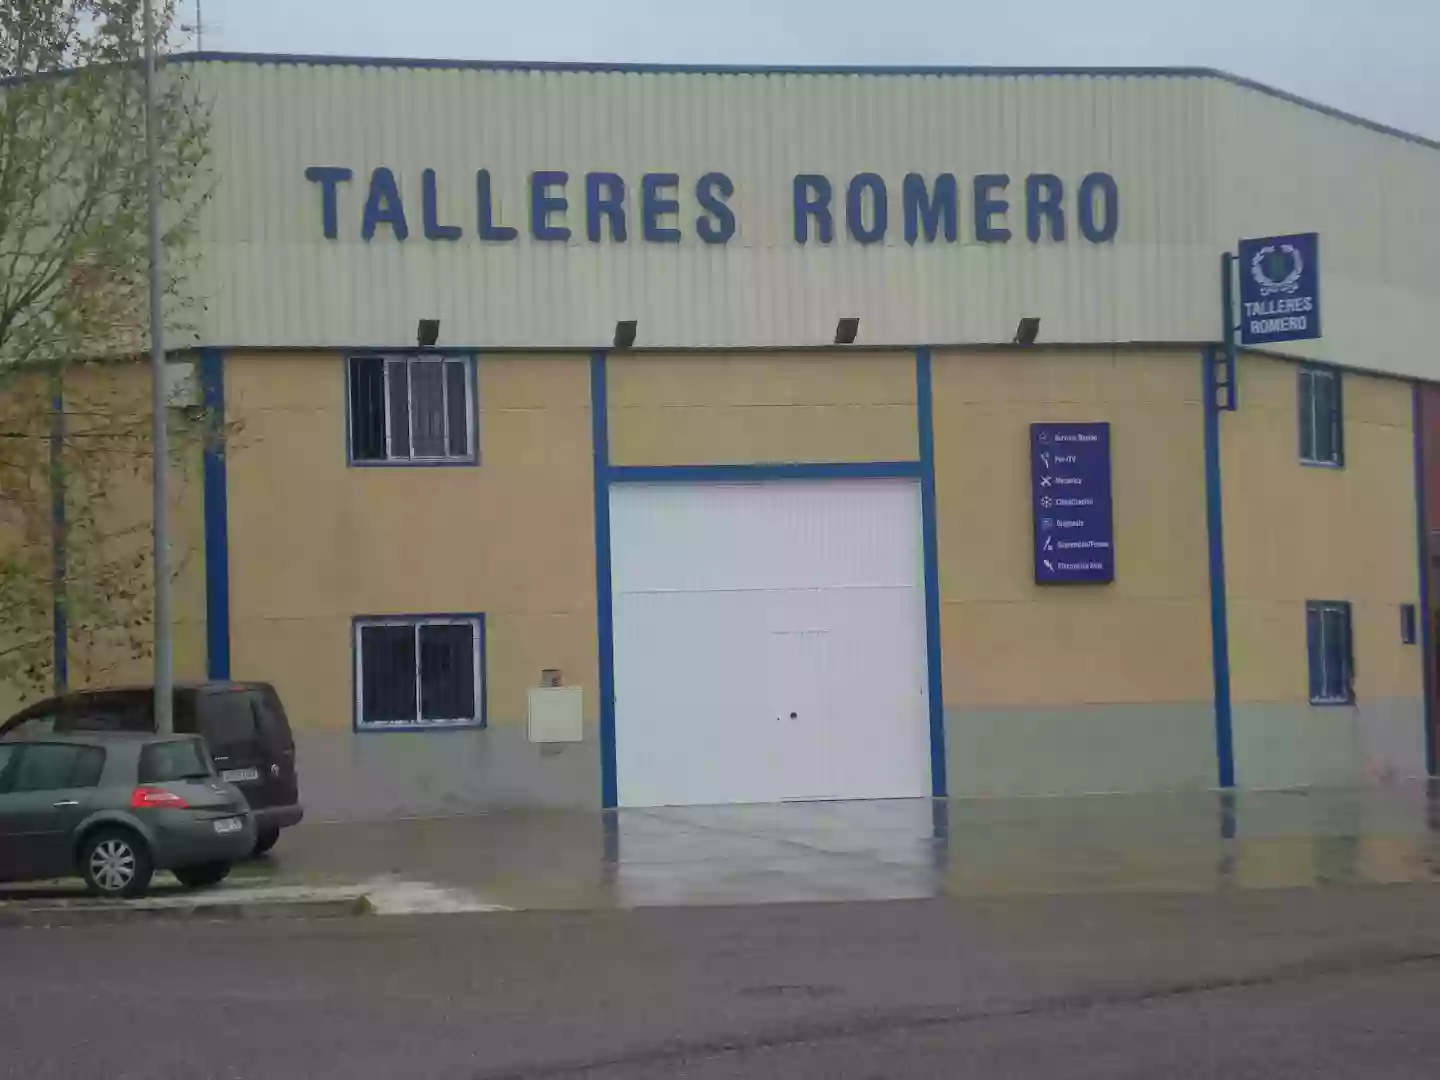 Talleres Romero